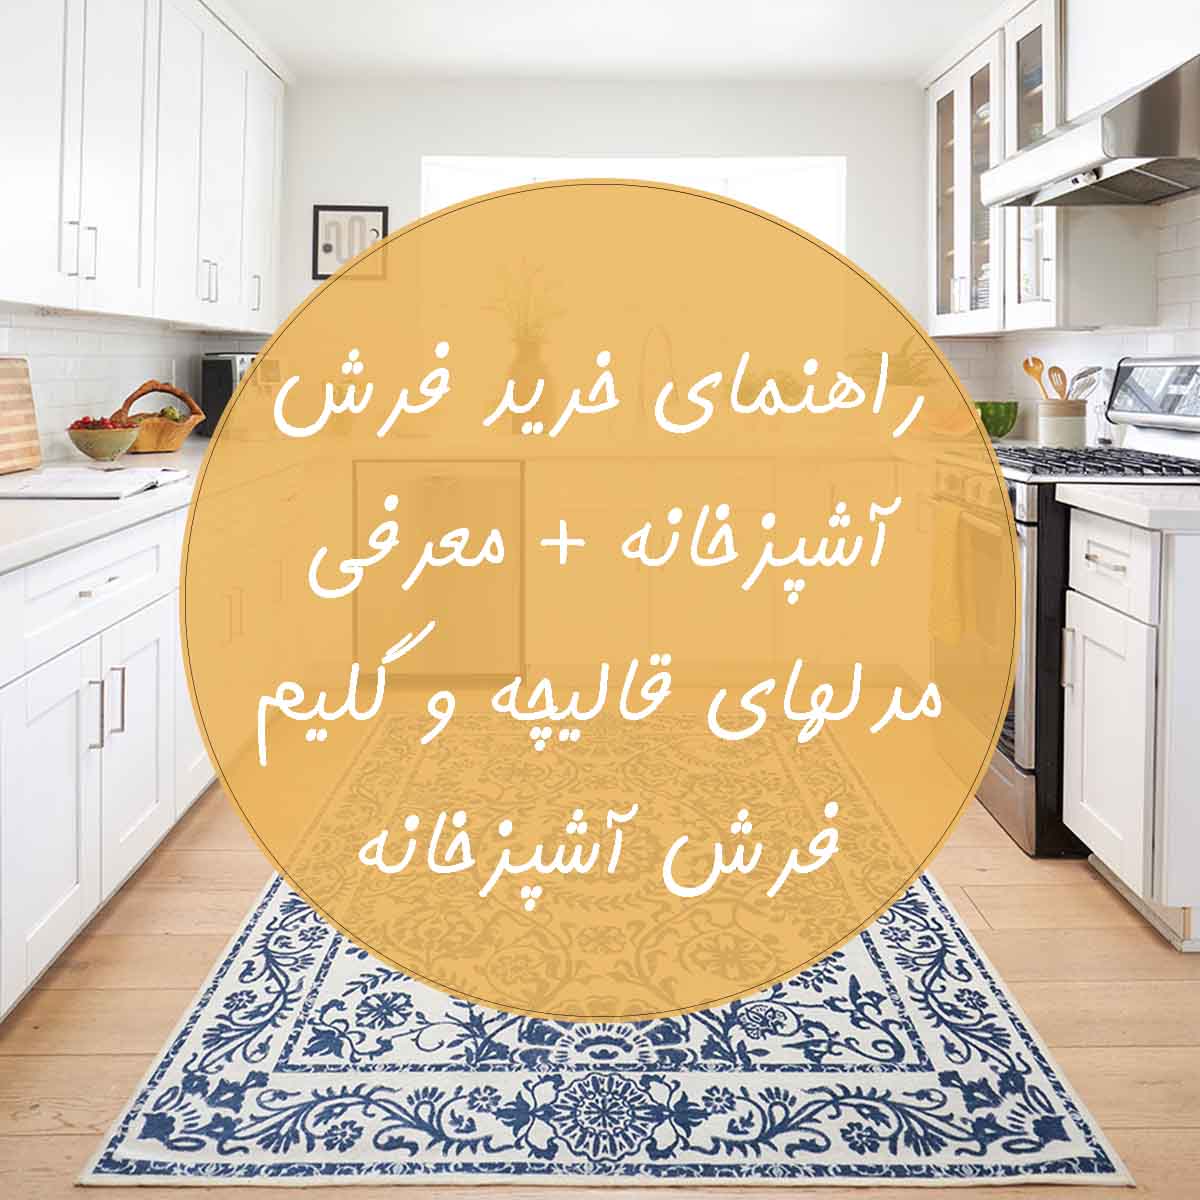 راهنمای خرید فرش آشپزخانه و معرفی انواع فرش آشپزخانه با قیمت